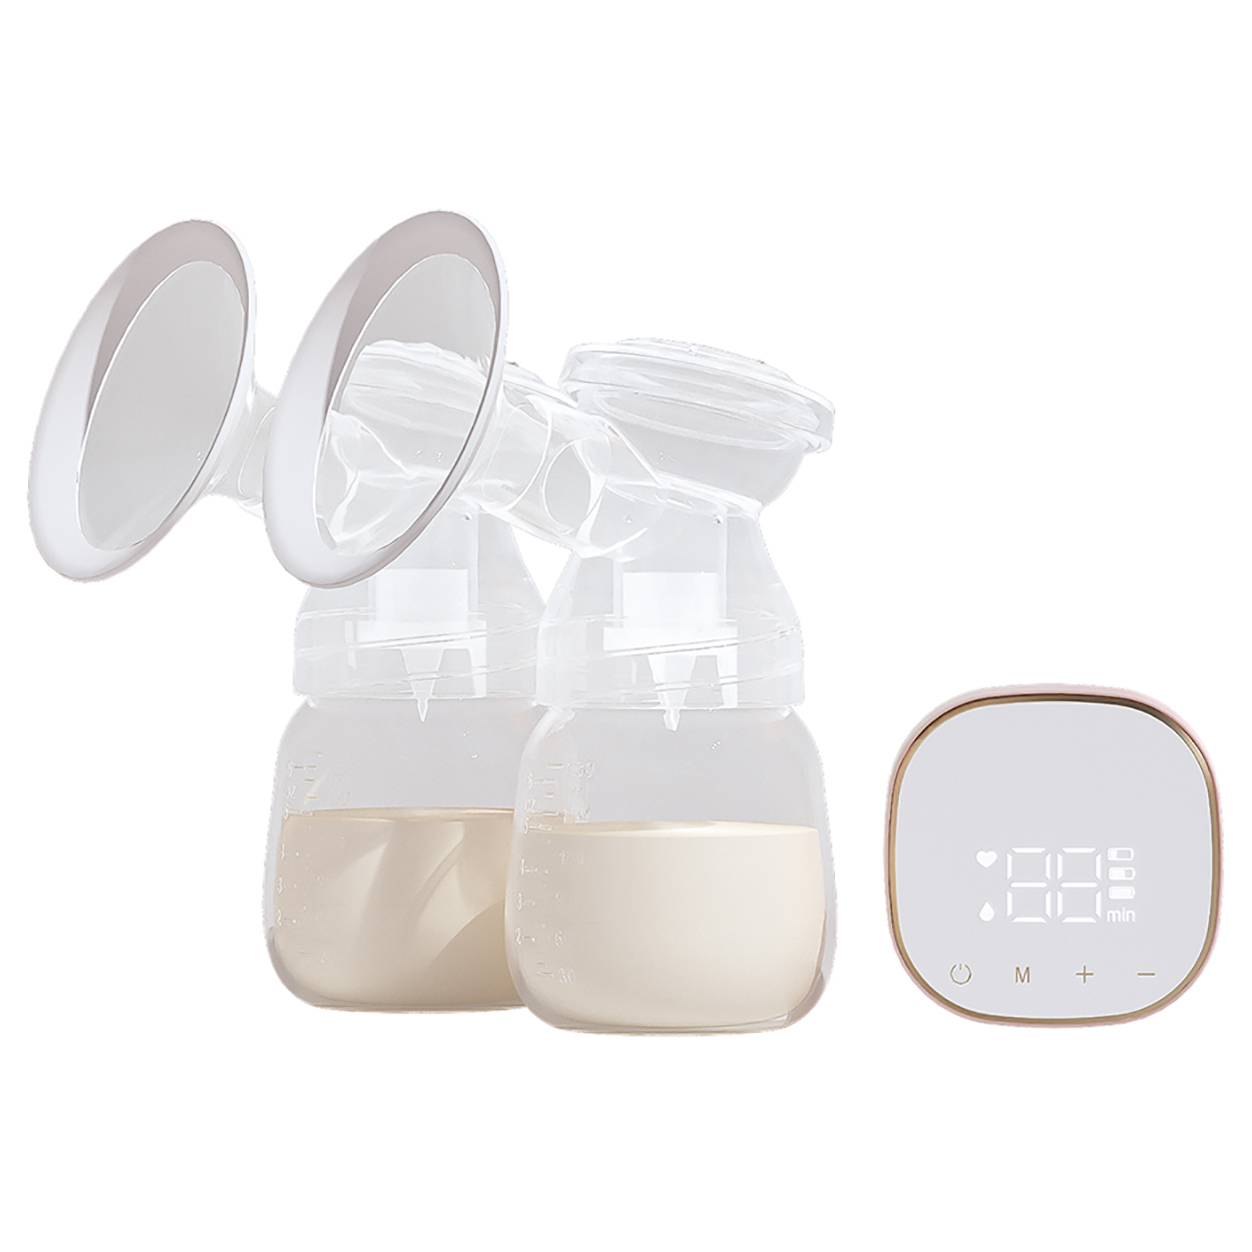 دستگاه پمپ شیر شیر قابل حمل برقی تصویر ویژه